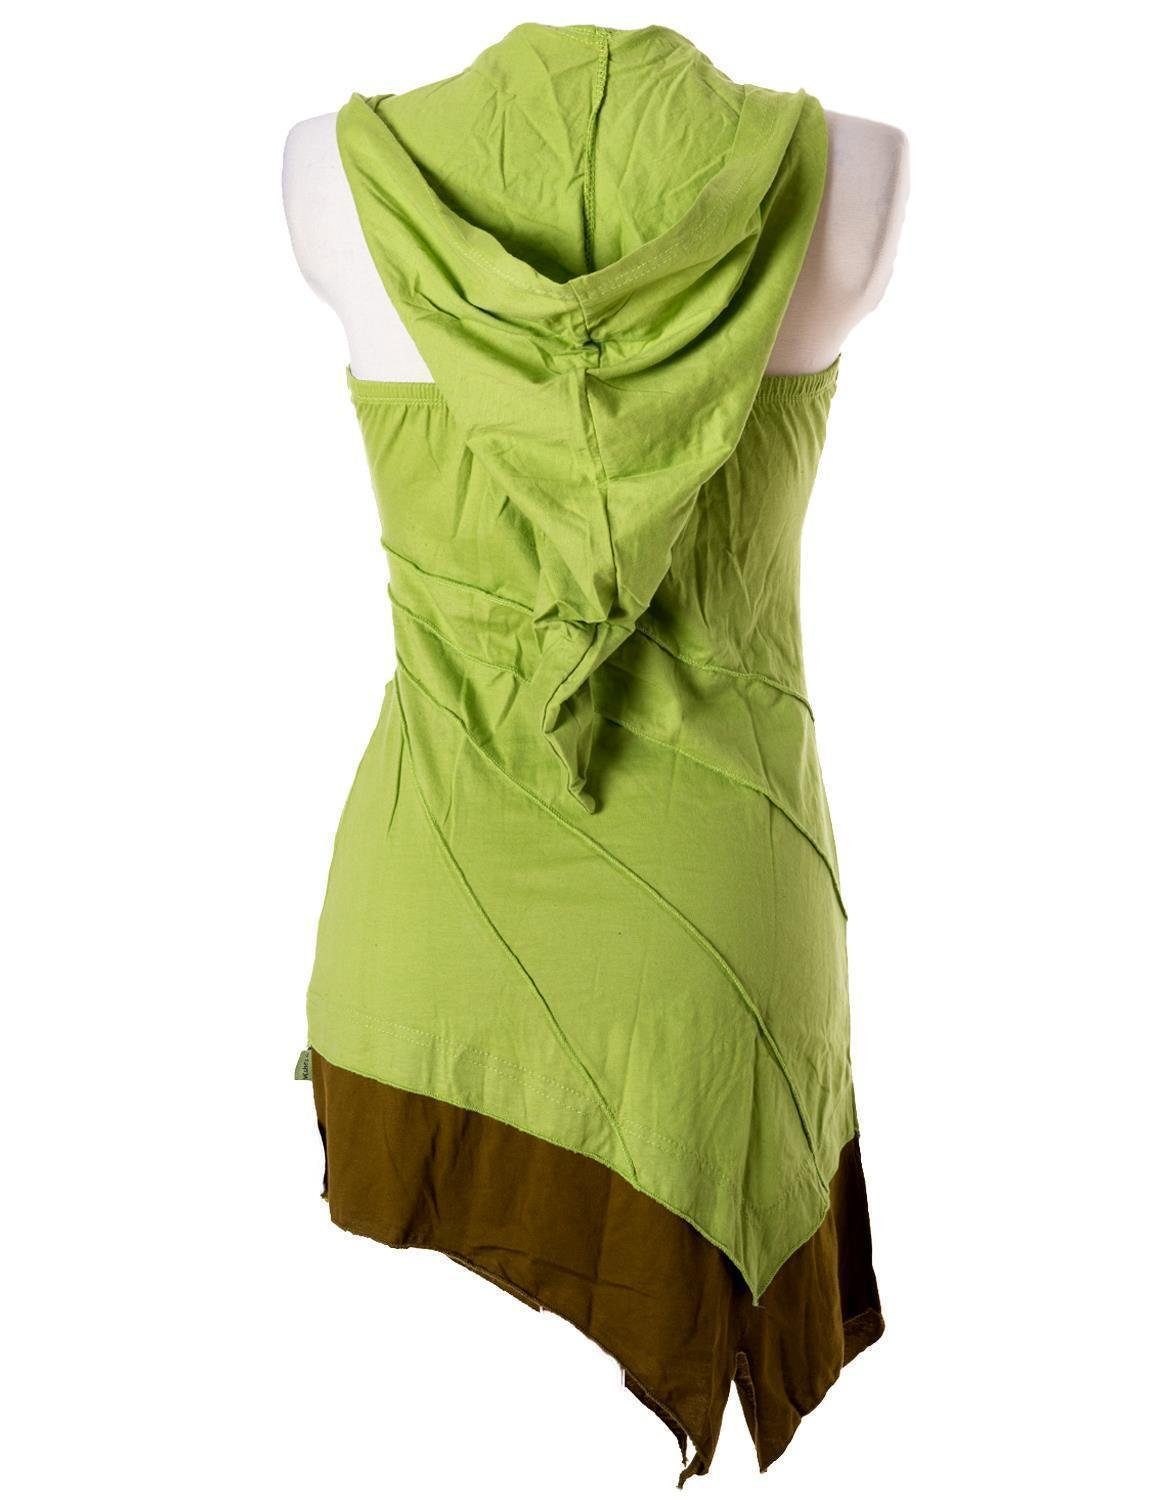 Kleid Mini Boho Elfen zweifarbig Zipfelkleid Neckholder Goa, Vishes Neckholderkleid Style grün Hippie,